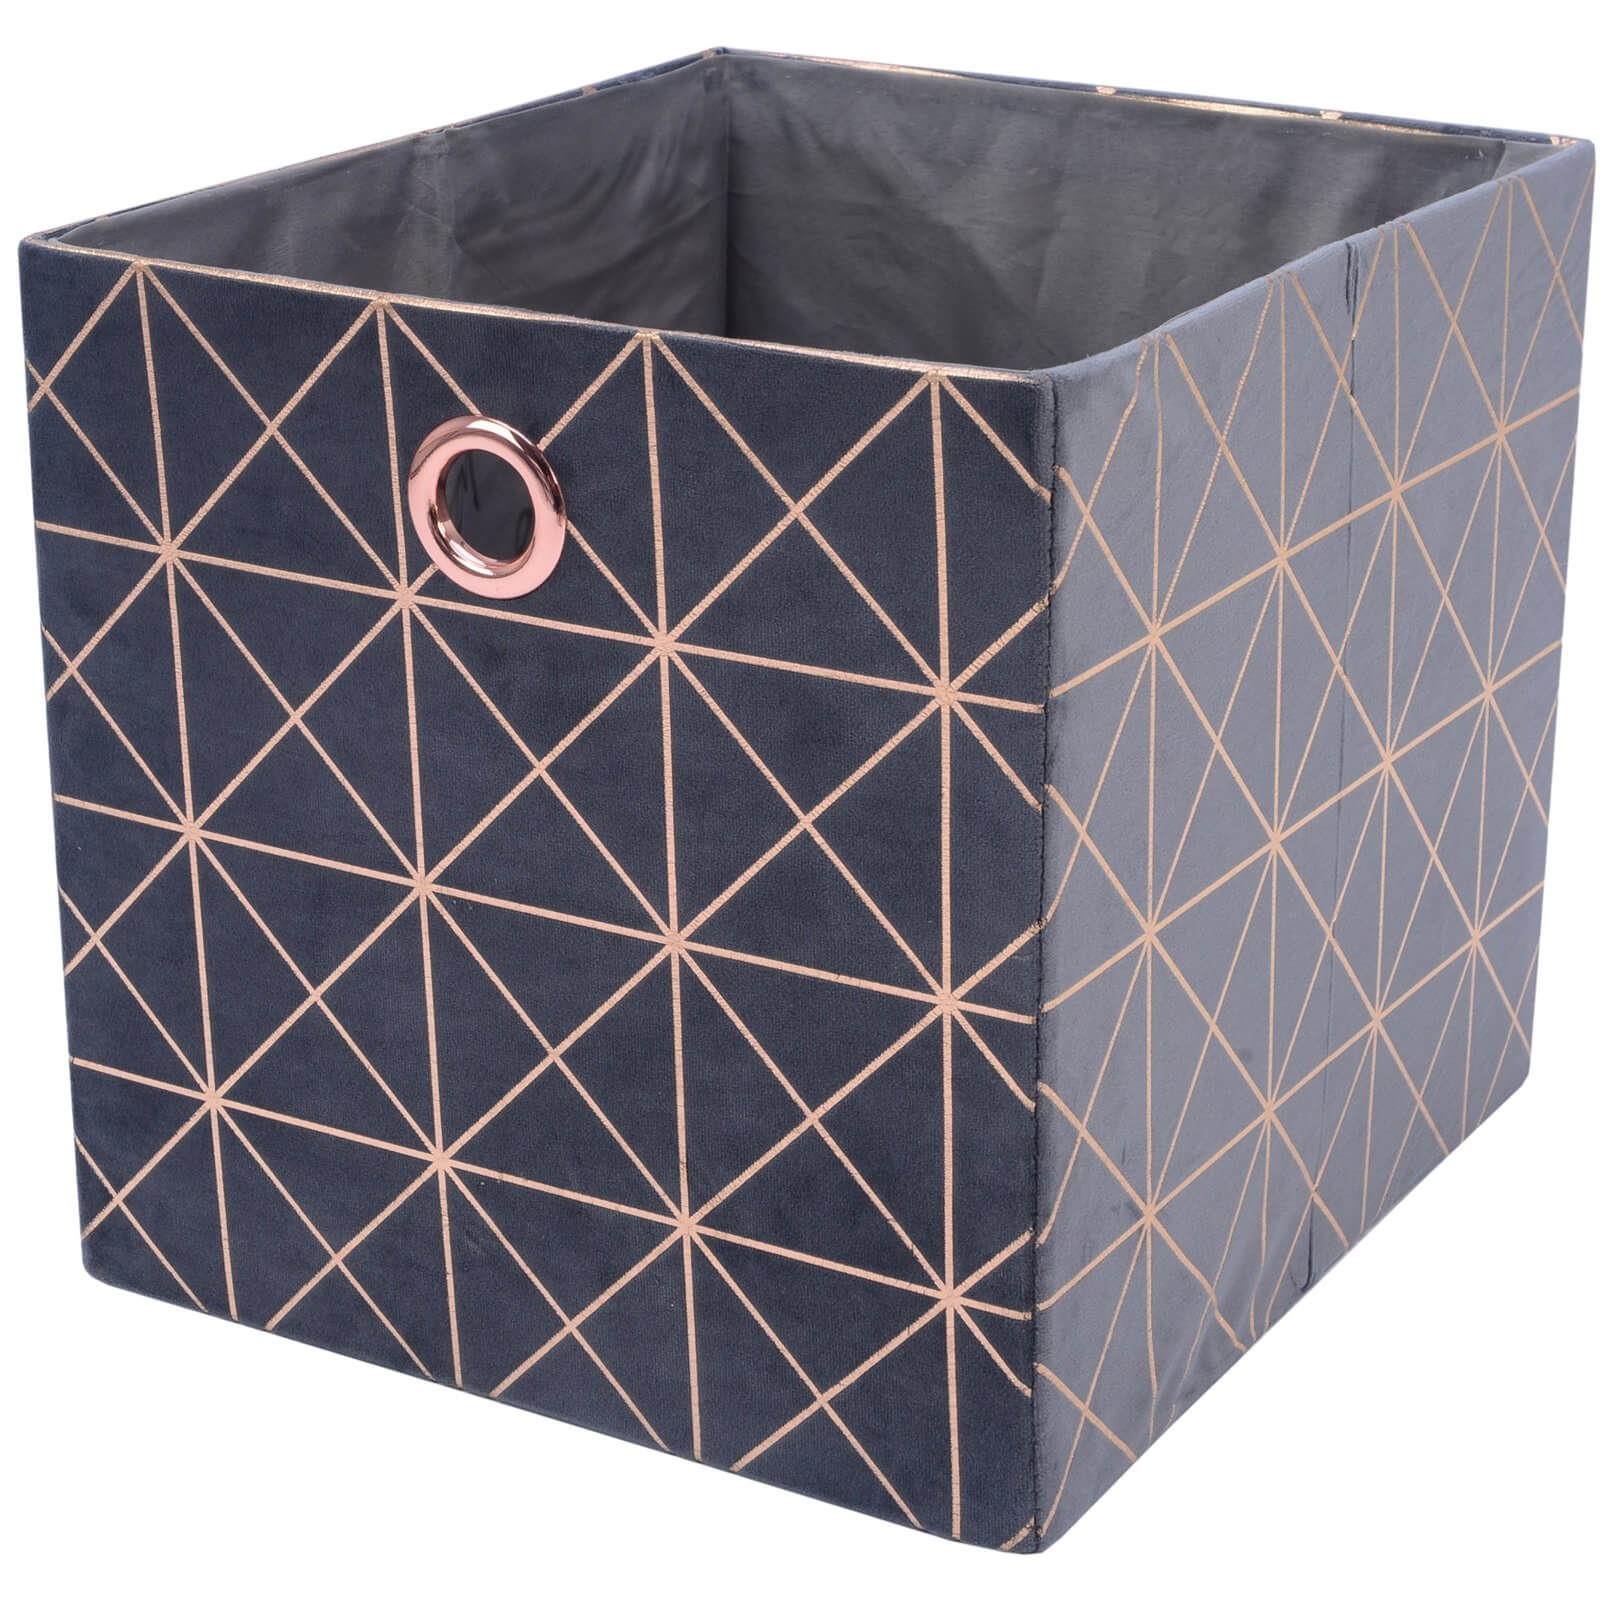 Premium Clever Cube Velvet Insert - Grey & Rose Gold